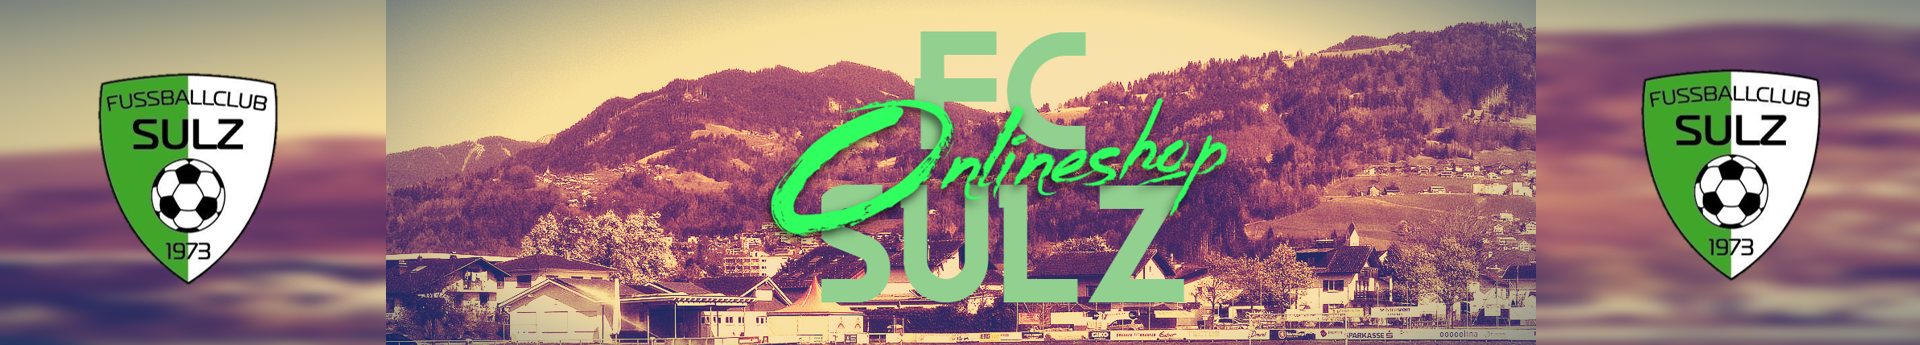 FC Sulz Title Image